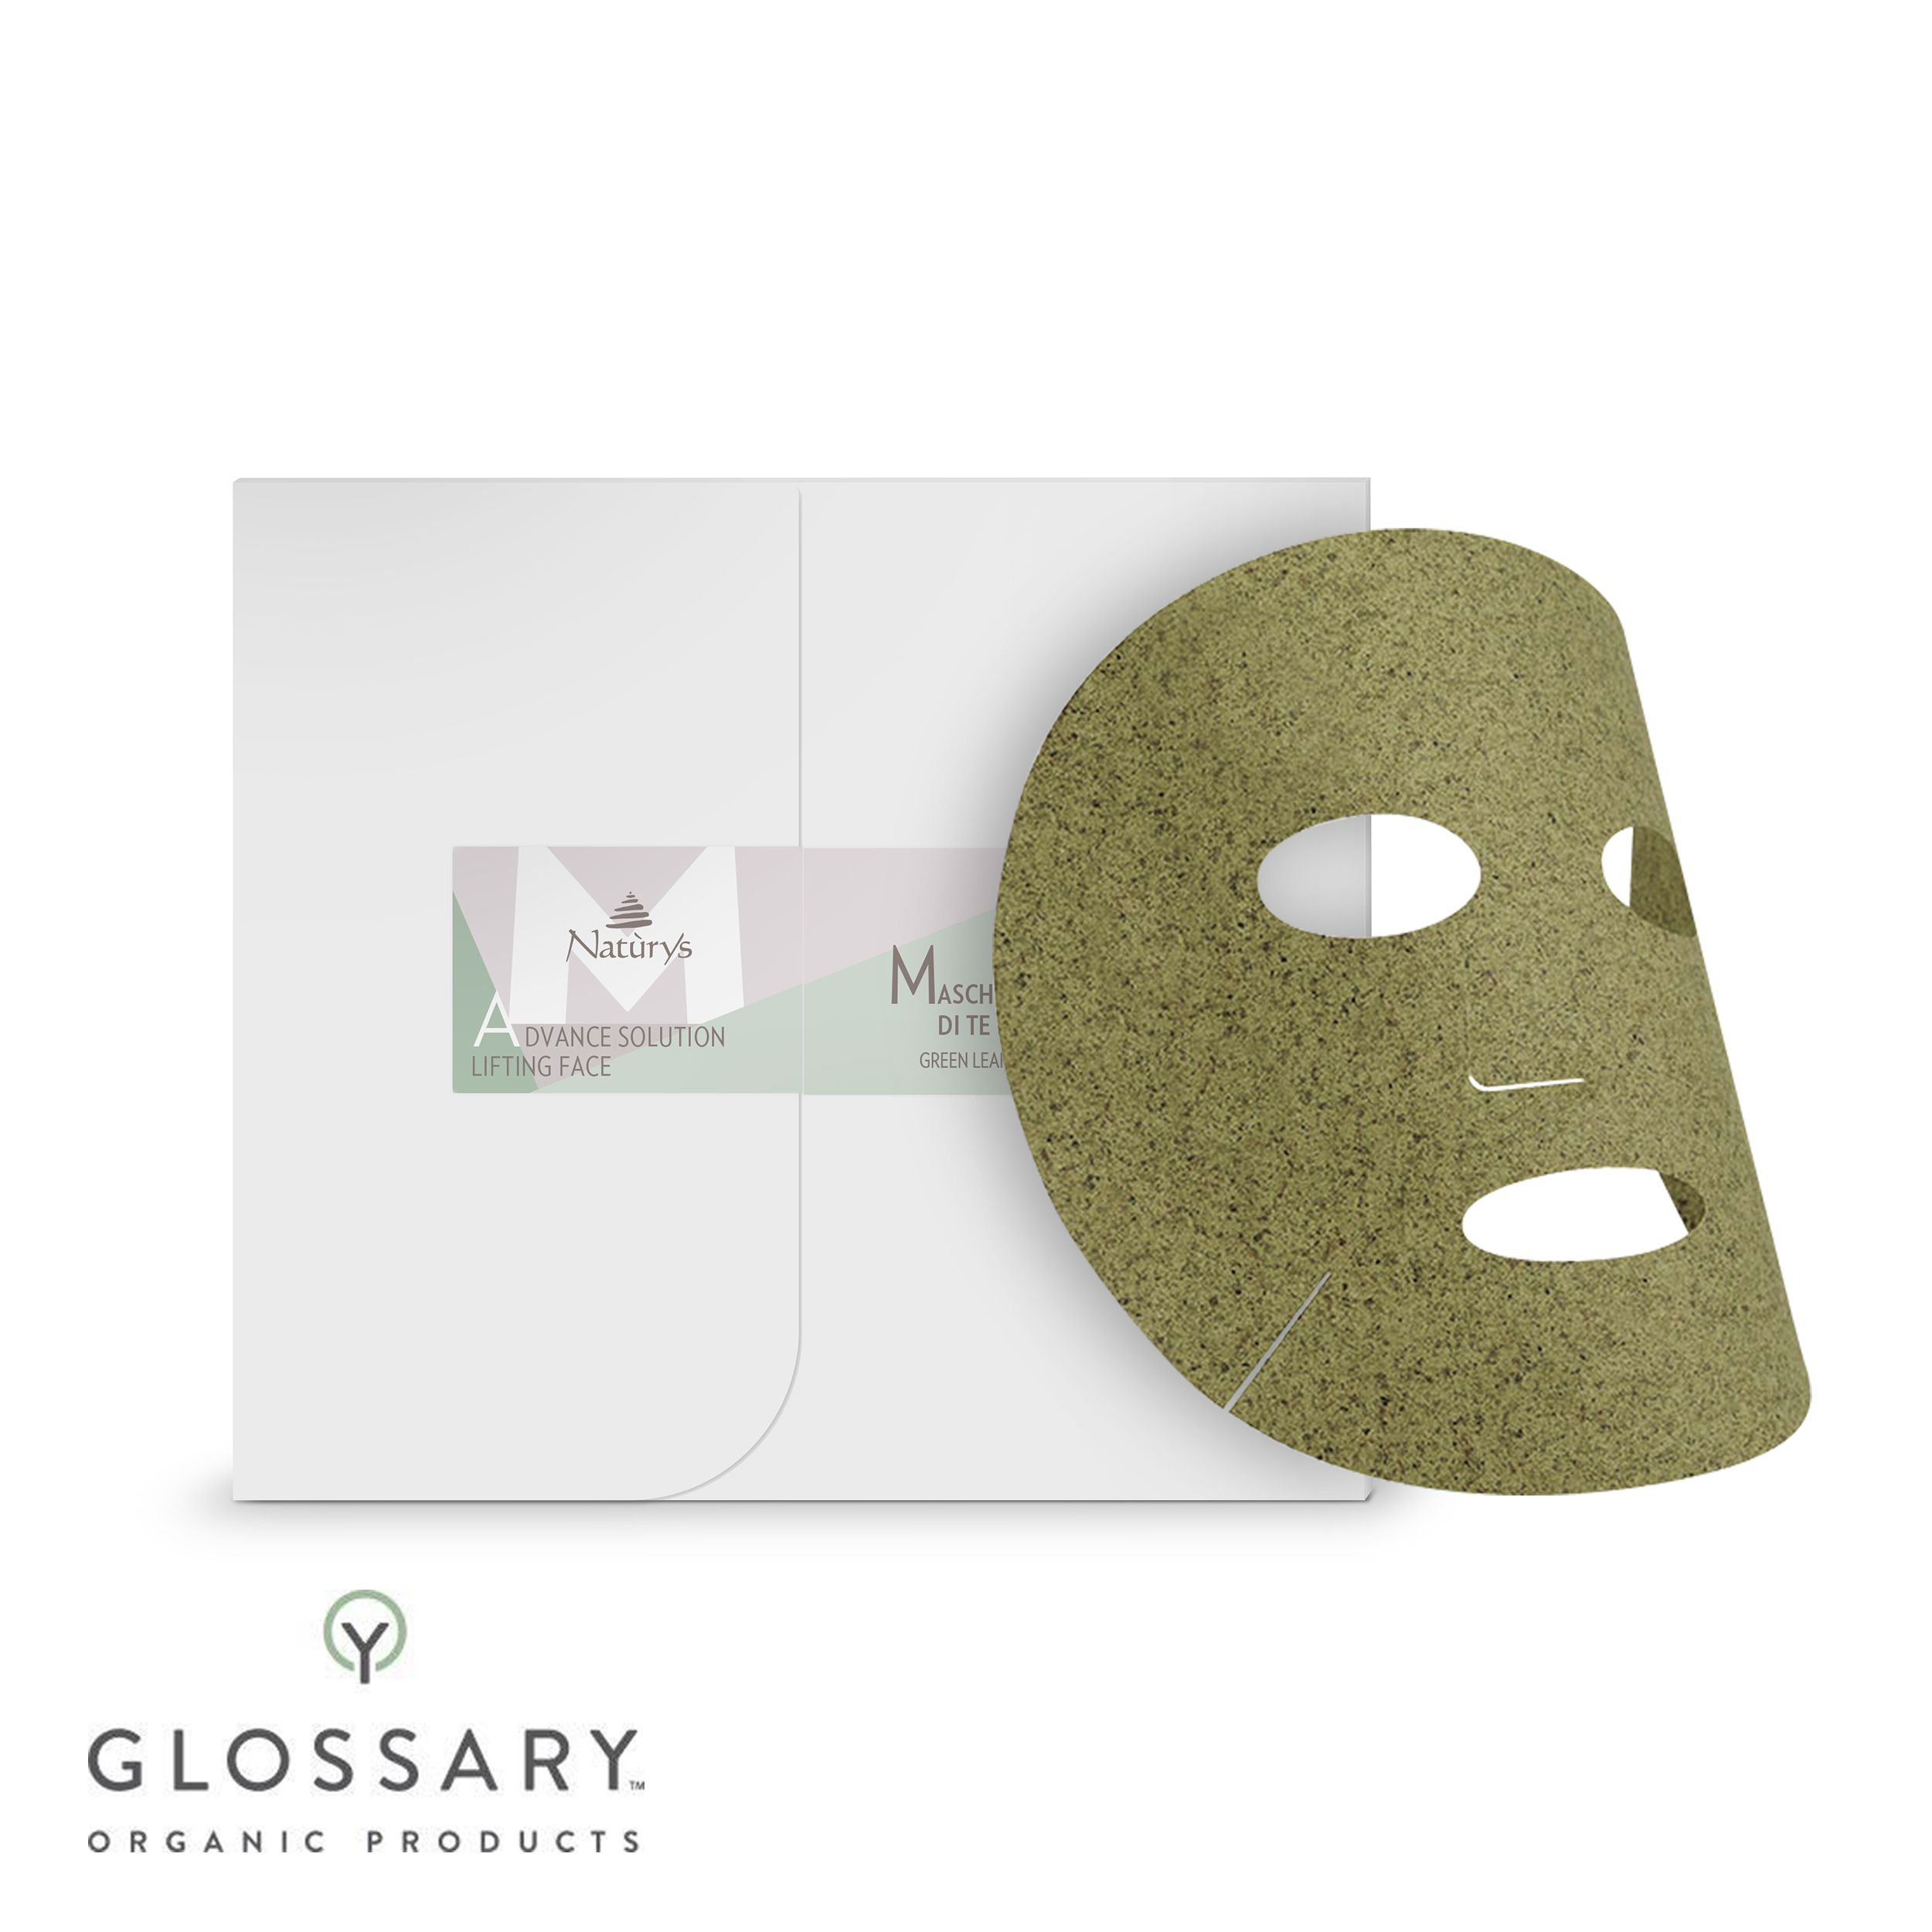 Маска для лица с листьями зеленого чая Advance Solution от Bema Cosmetici, 